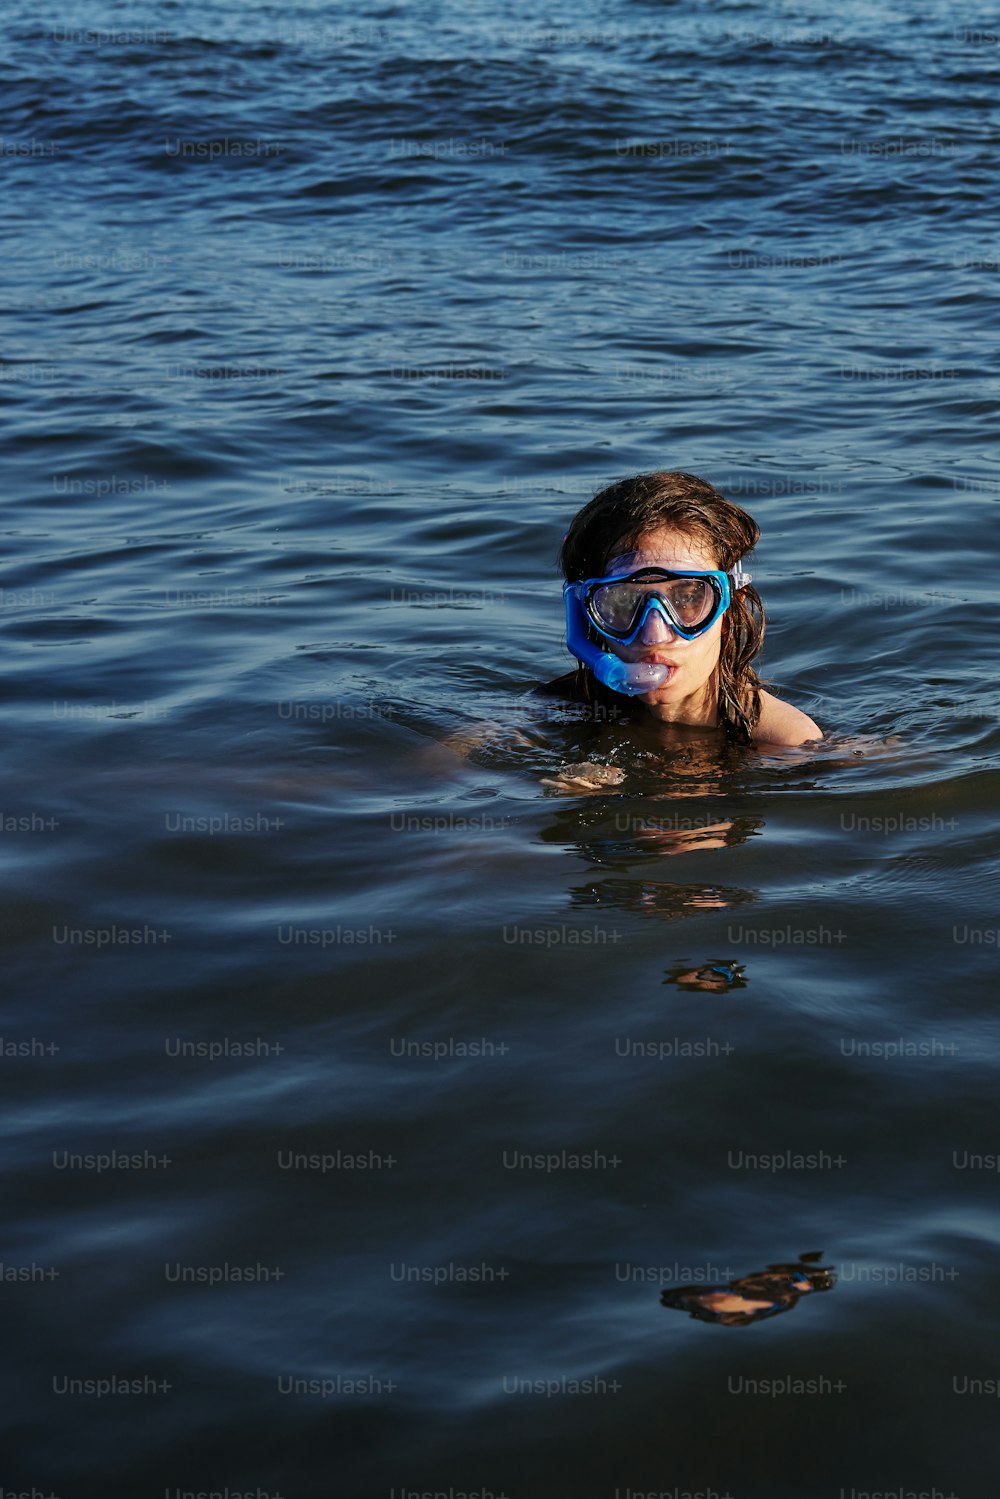 Una persona nadando en el agua con una máscara puesta